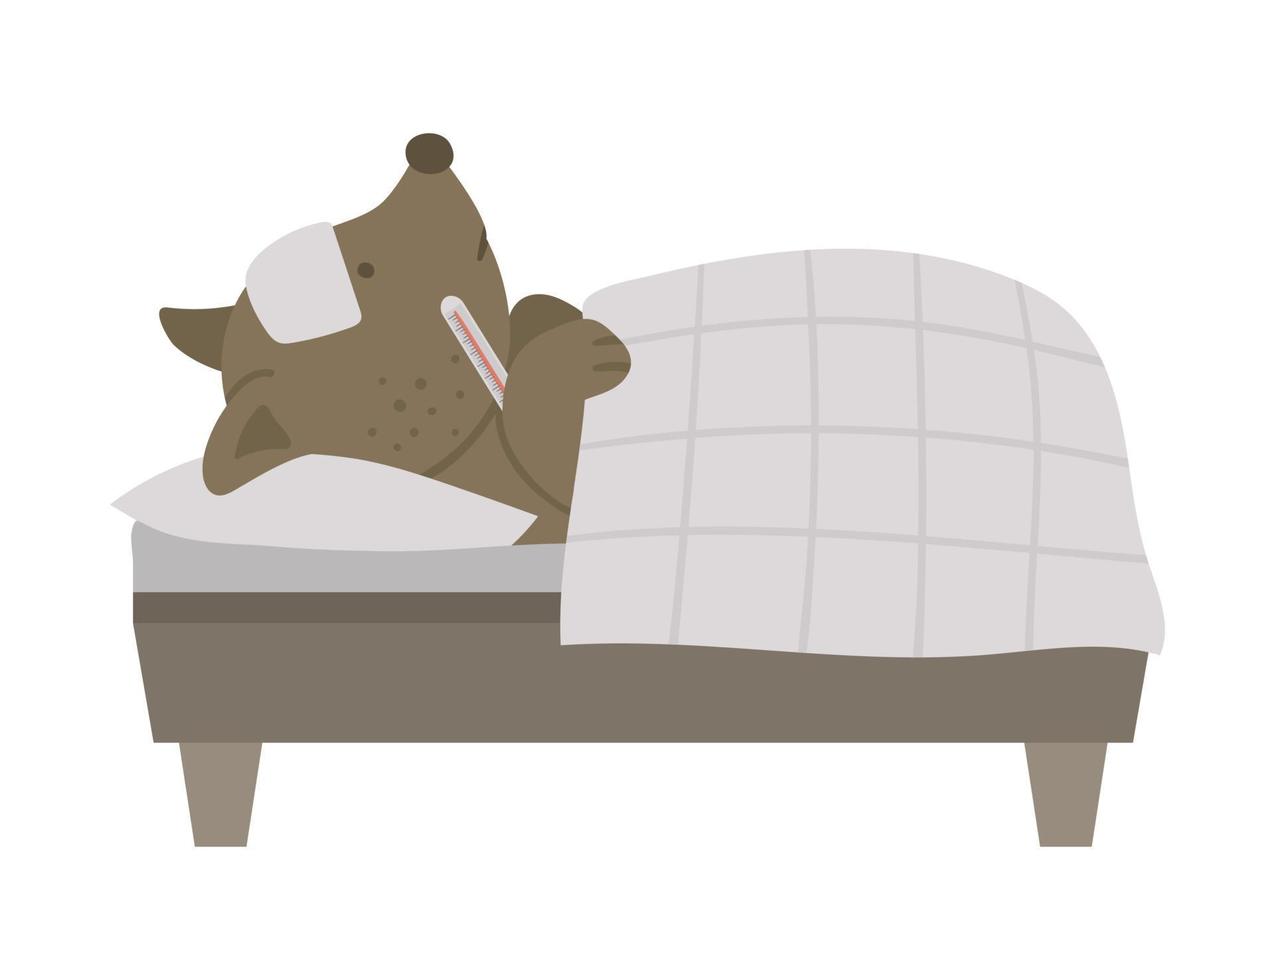 vektor sjukt djur i sängen. söt hund med termometer som har feber. rolig sjukhuspatientkaraktär. medicinsk illustration för barn.